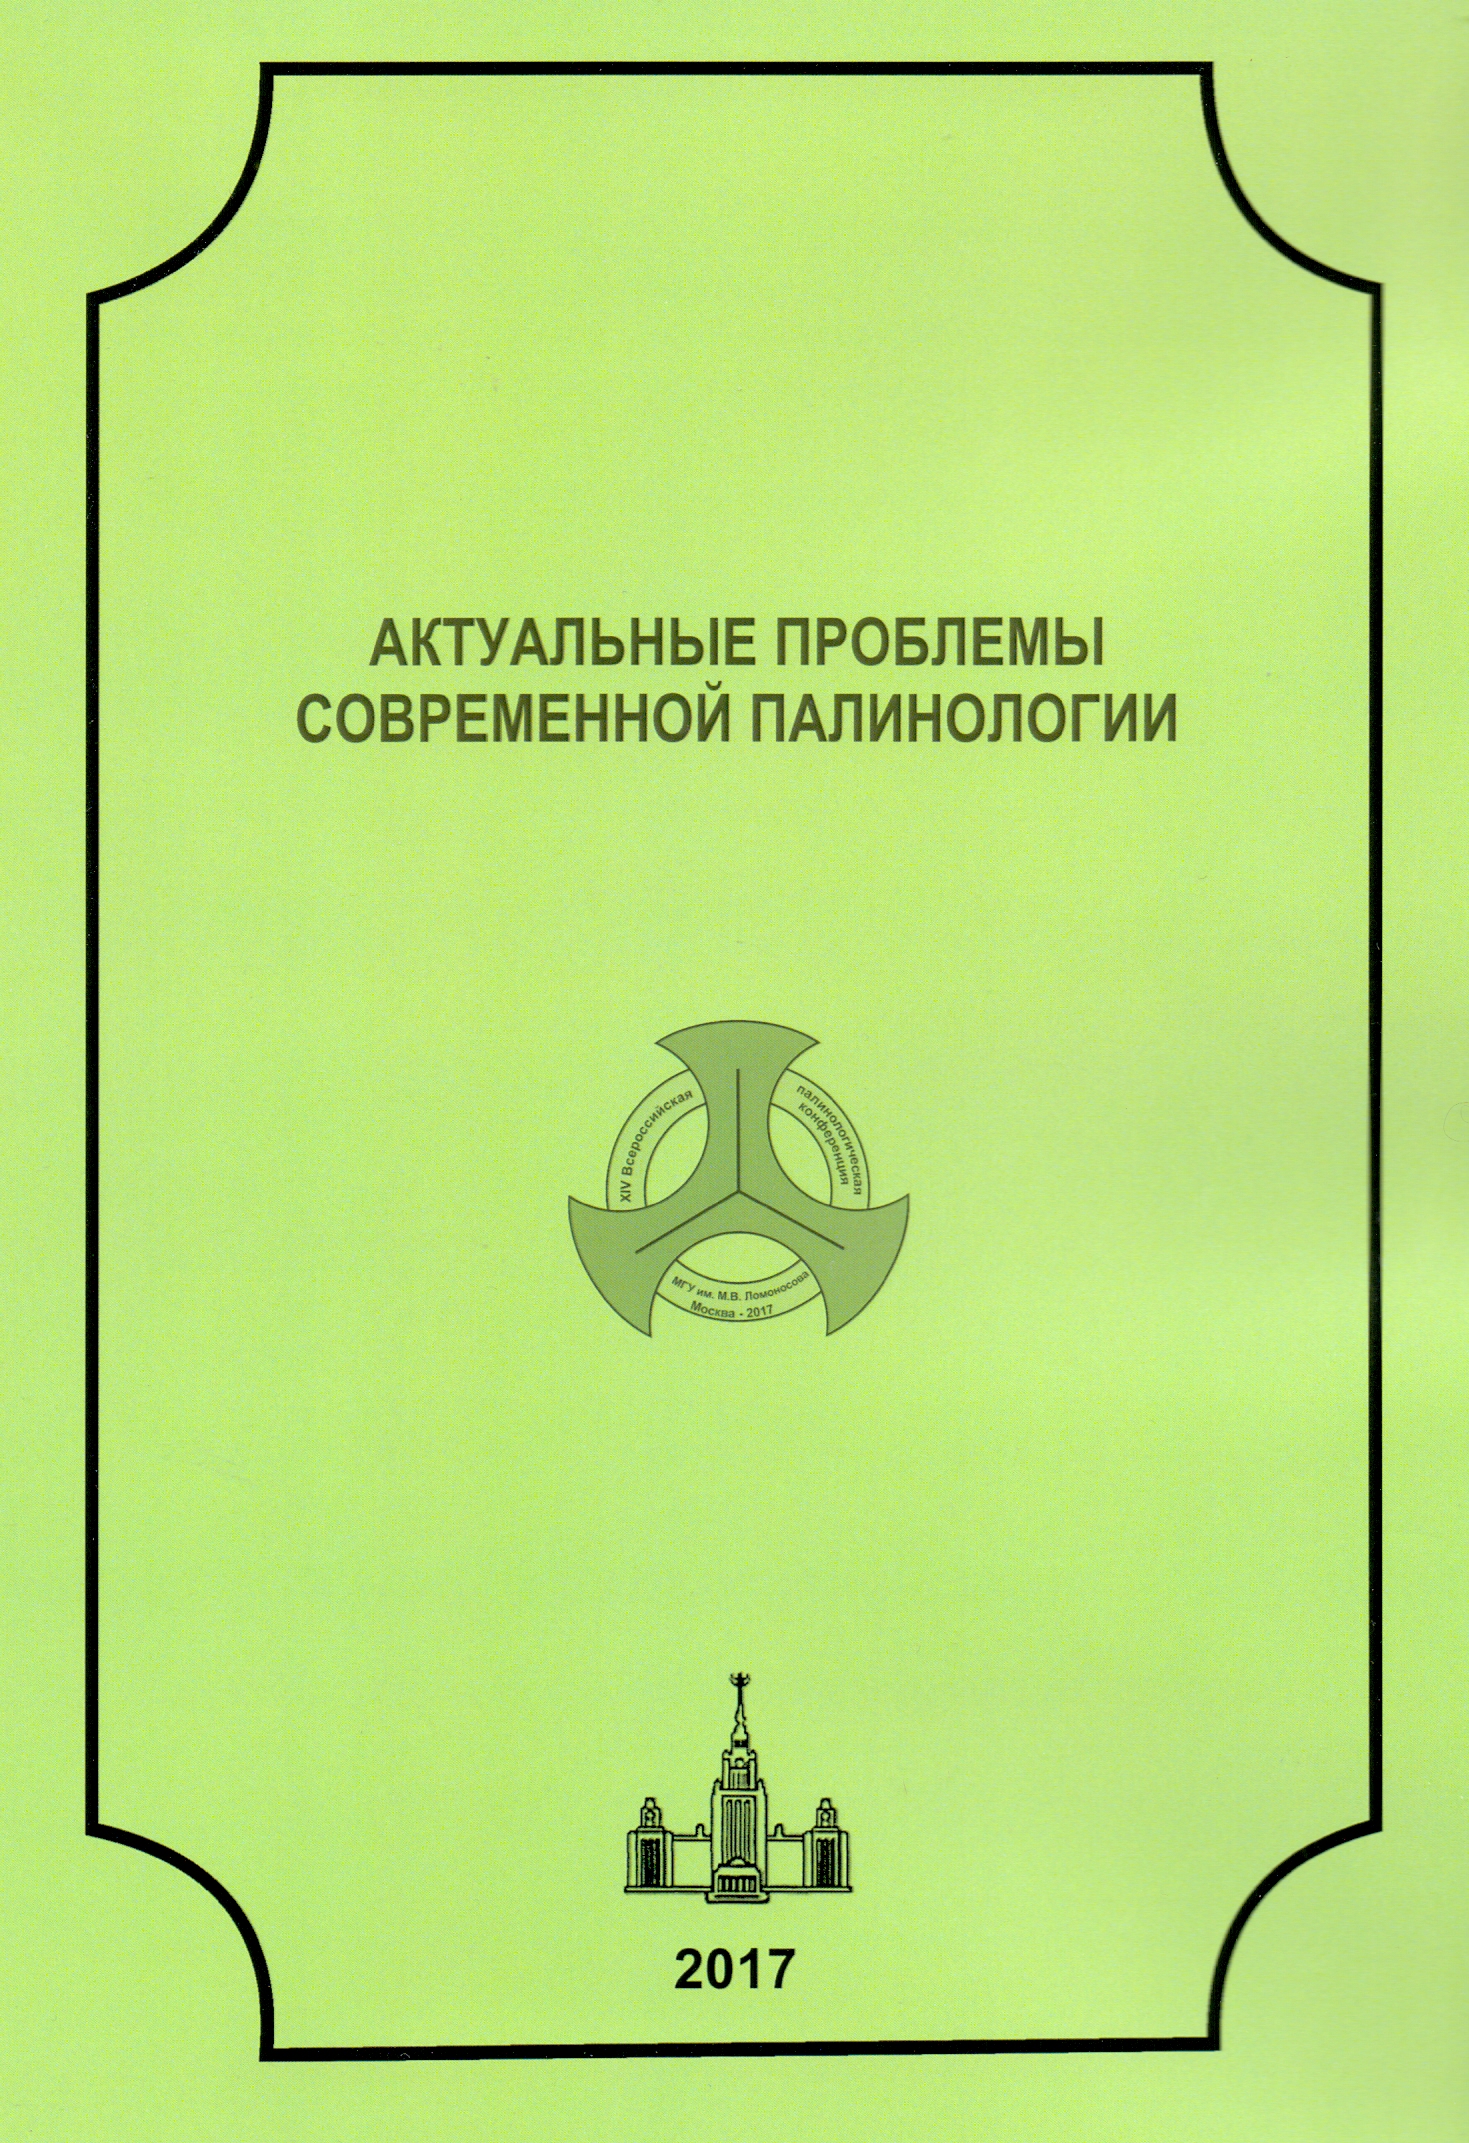 XIV Всероссийская палинологическая конференция